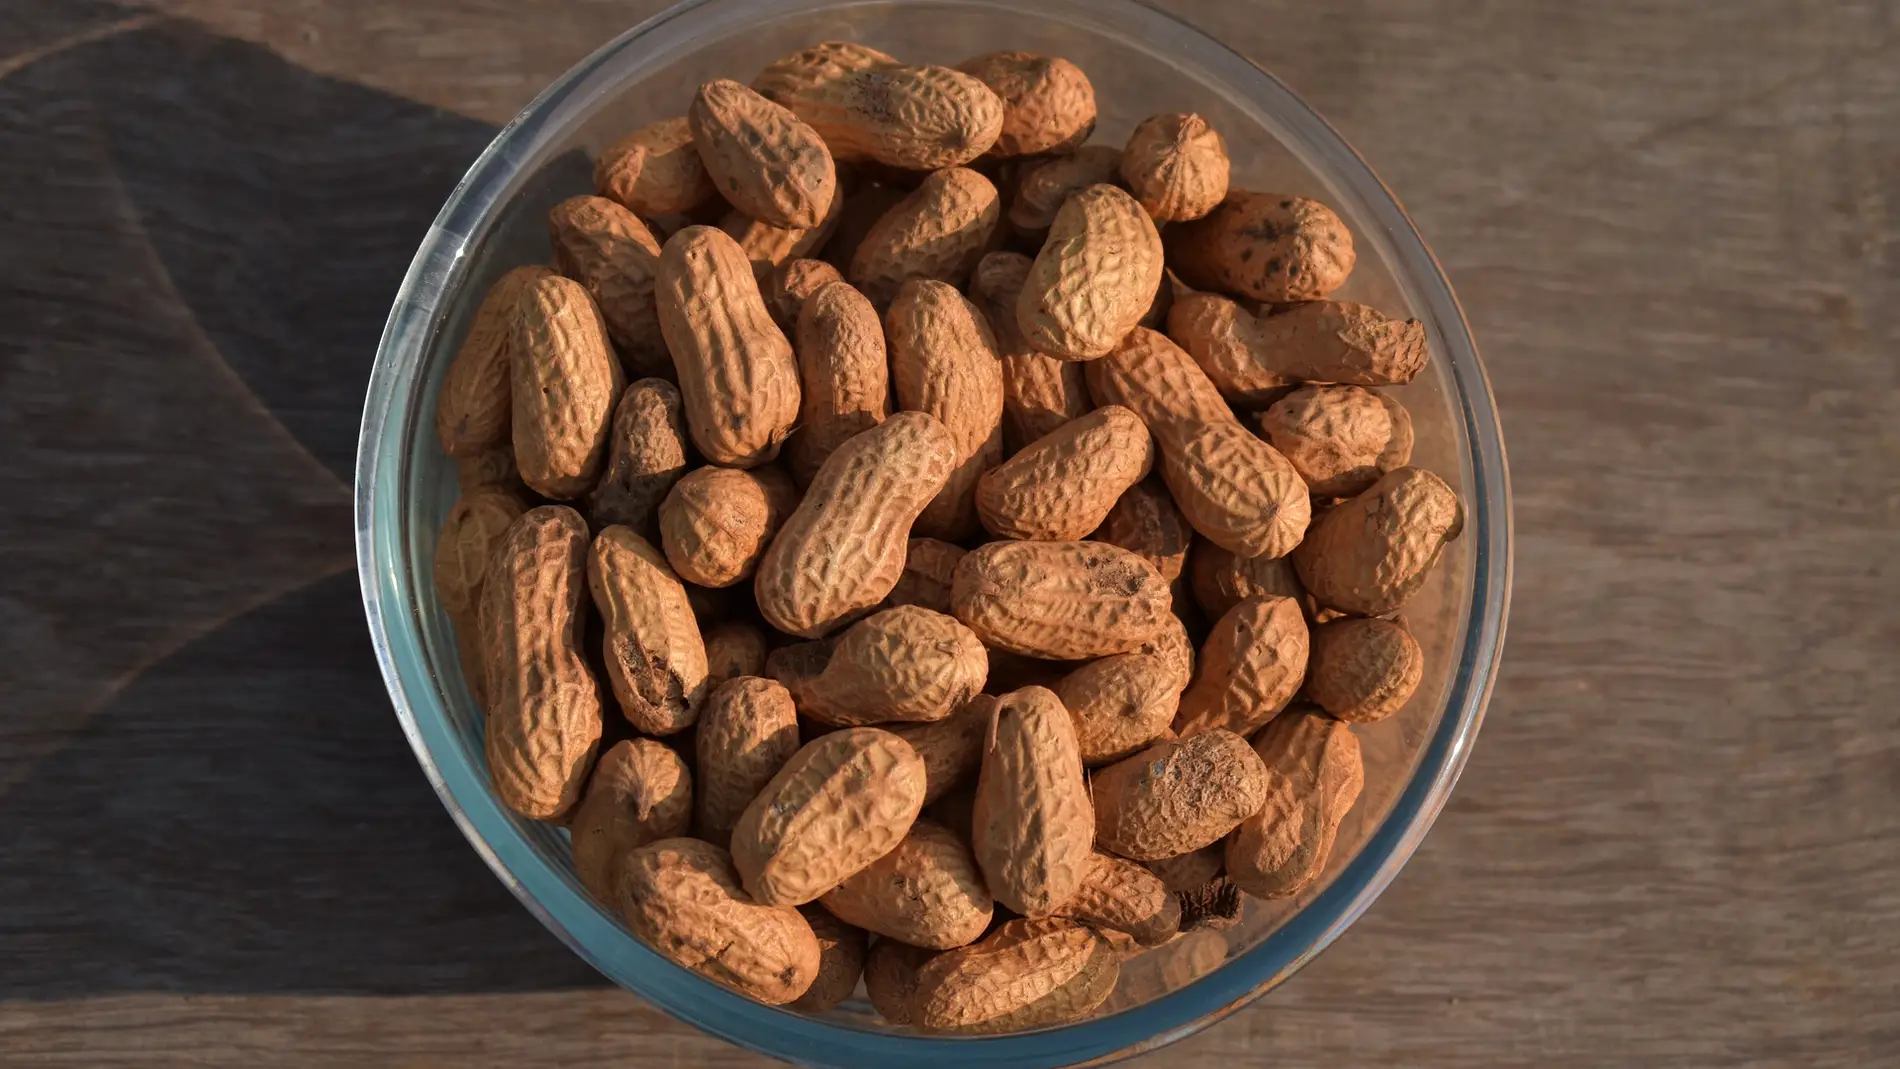 El consumo excesivo de cacahuetes por parte de personas con cáncer podría propagar la enfermedad